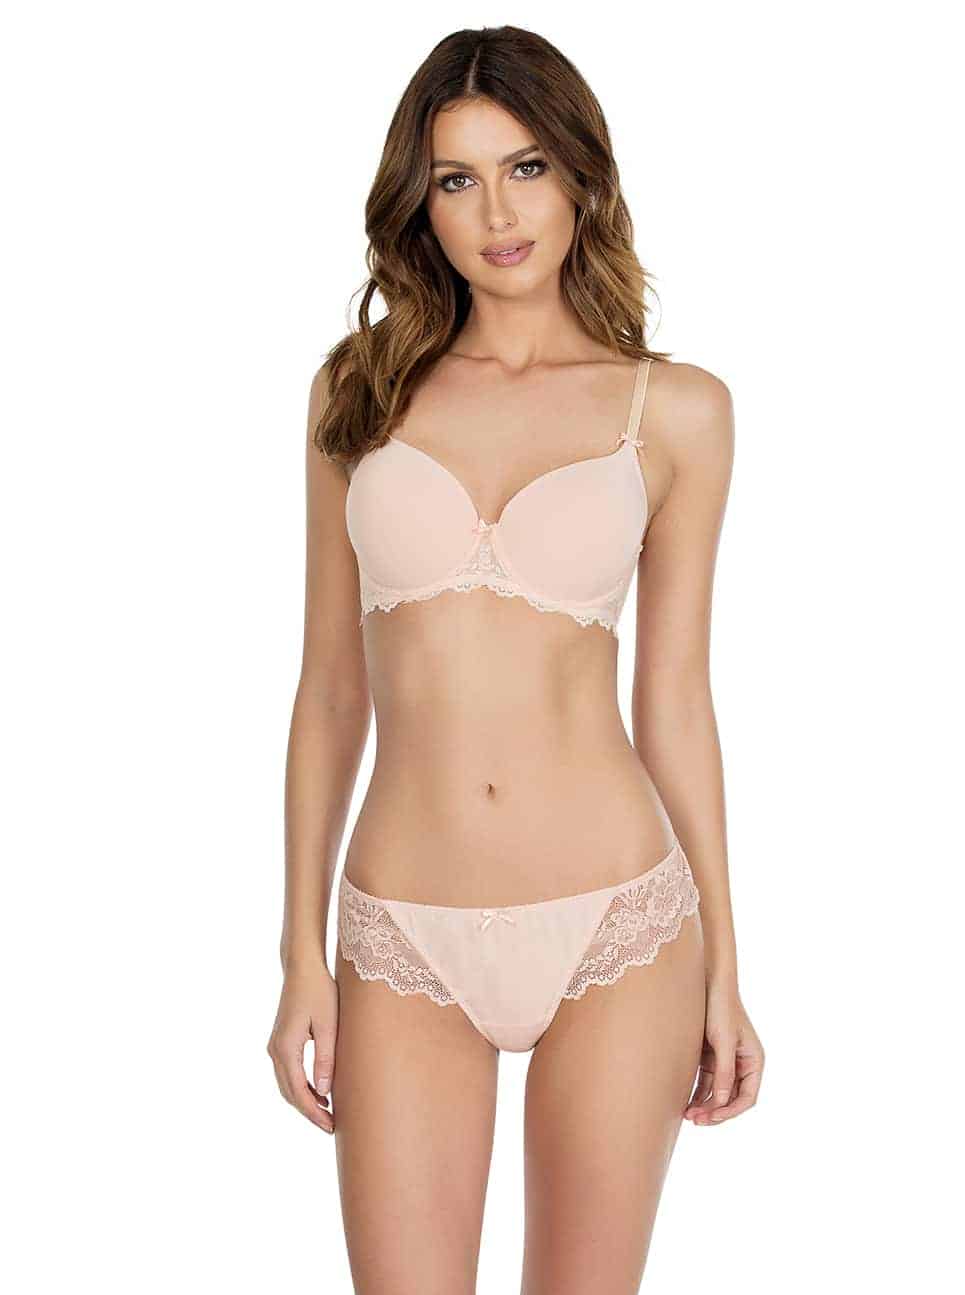 white bra plus size